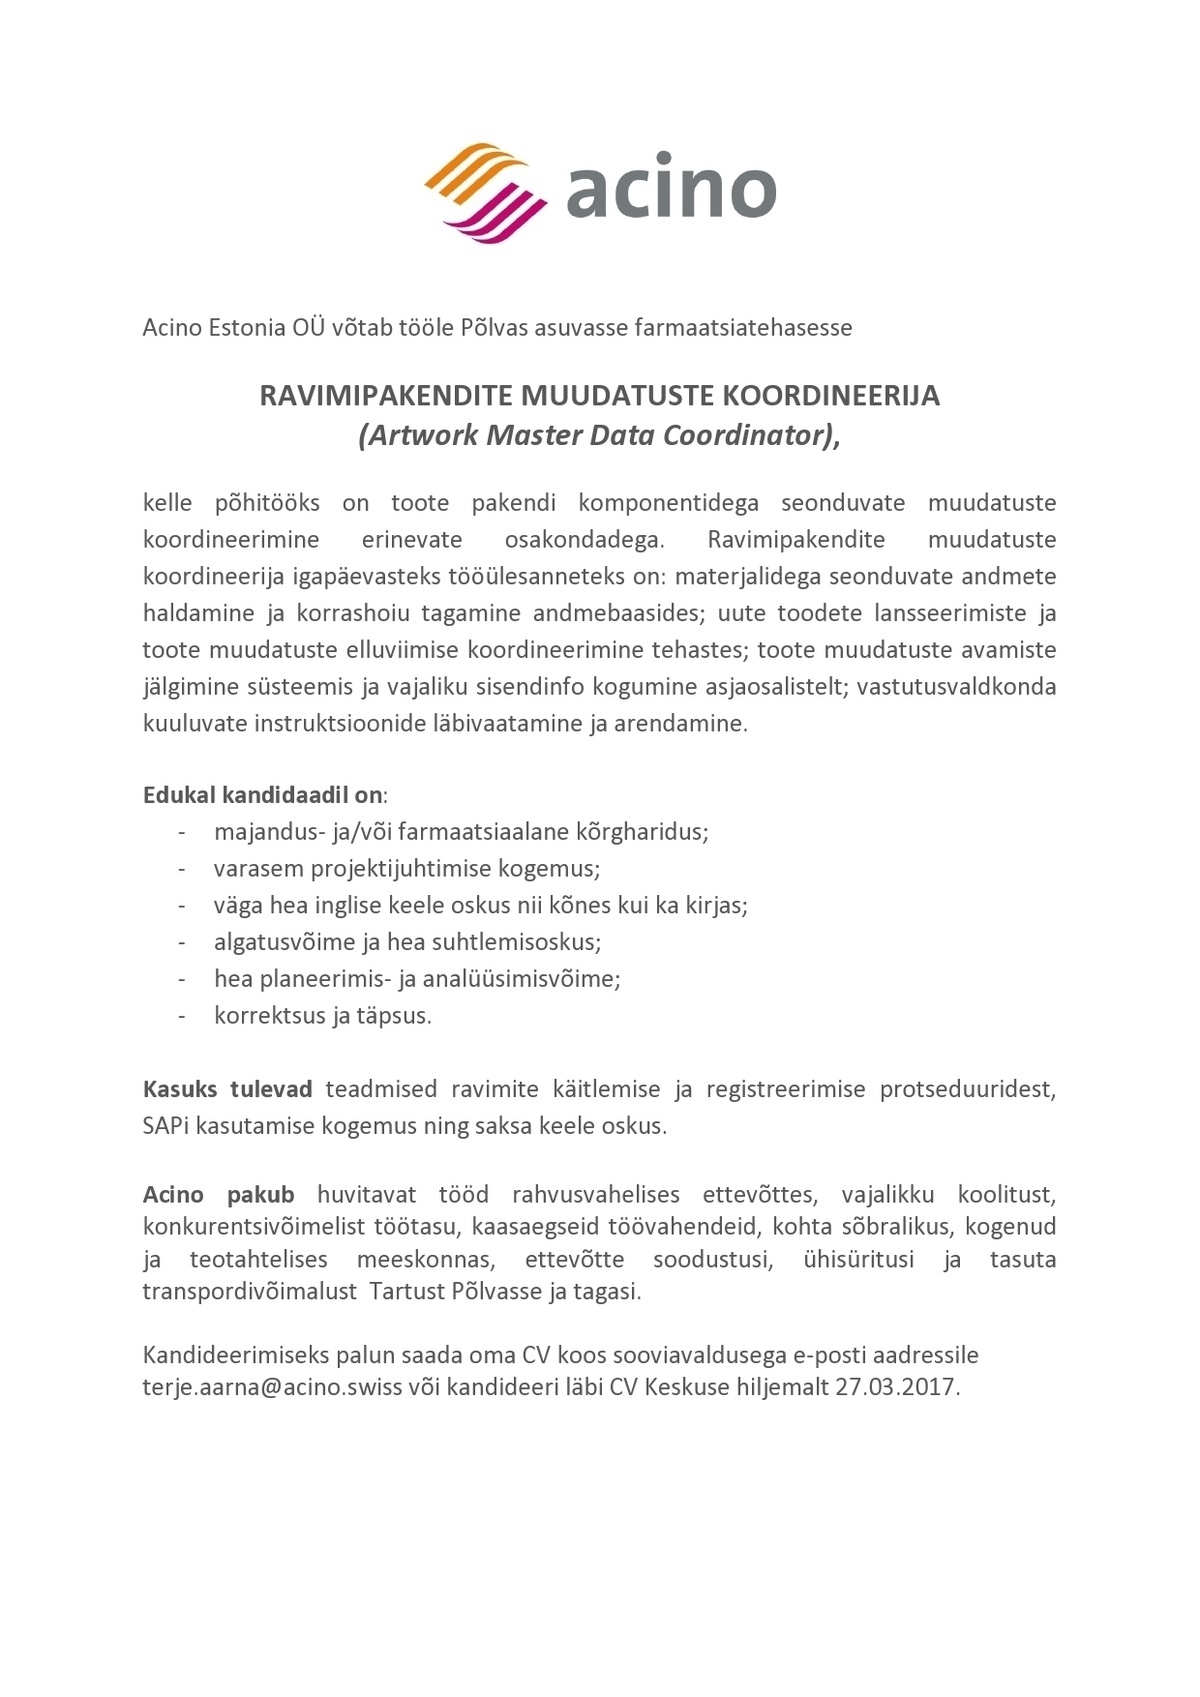 Acino Estonia OÜ Ravimipakendite muudatuste koordineerija